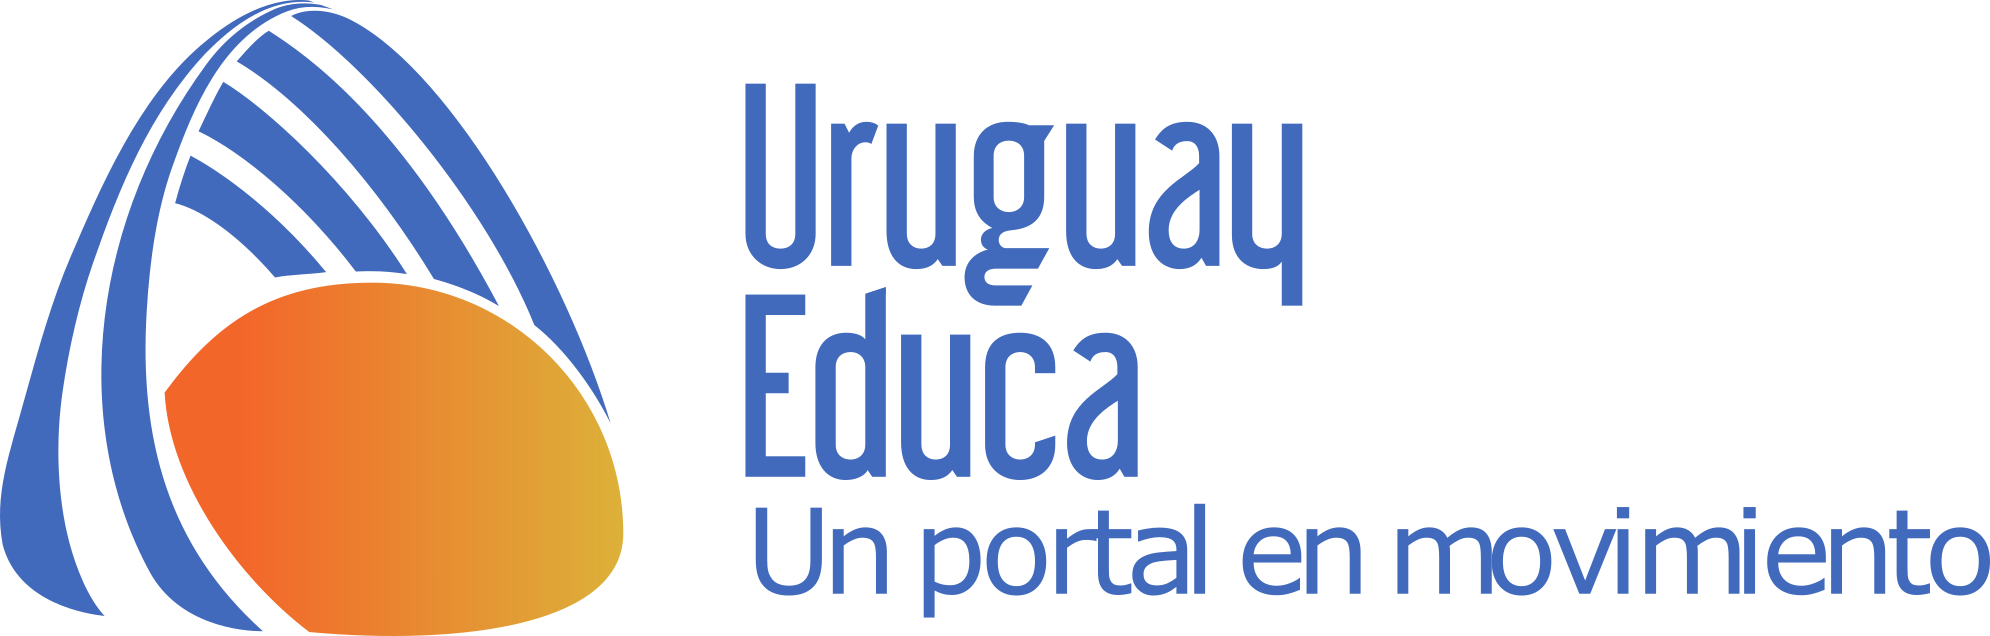 Logo portal